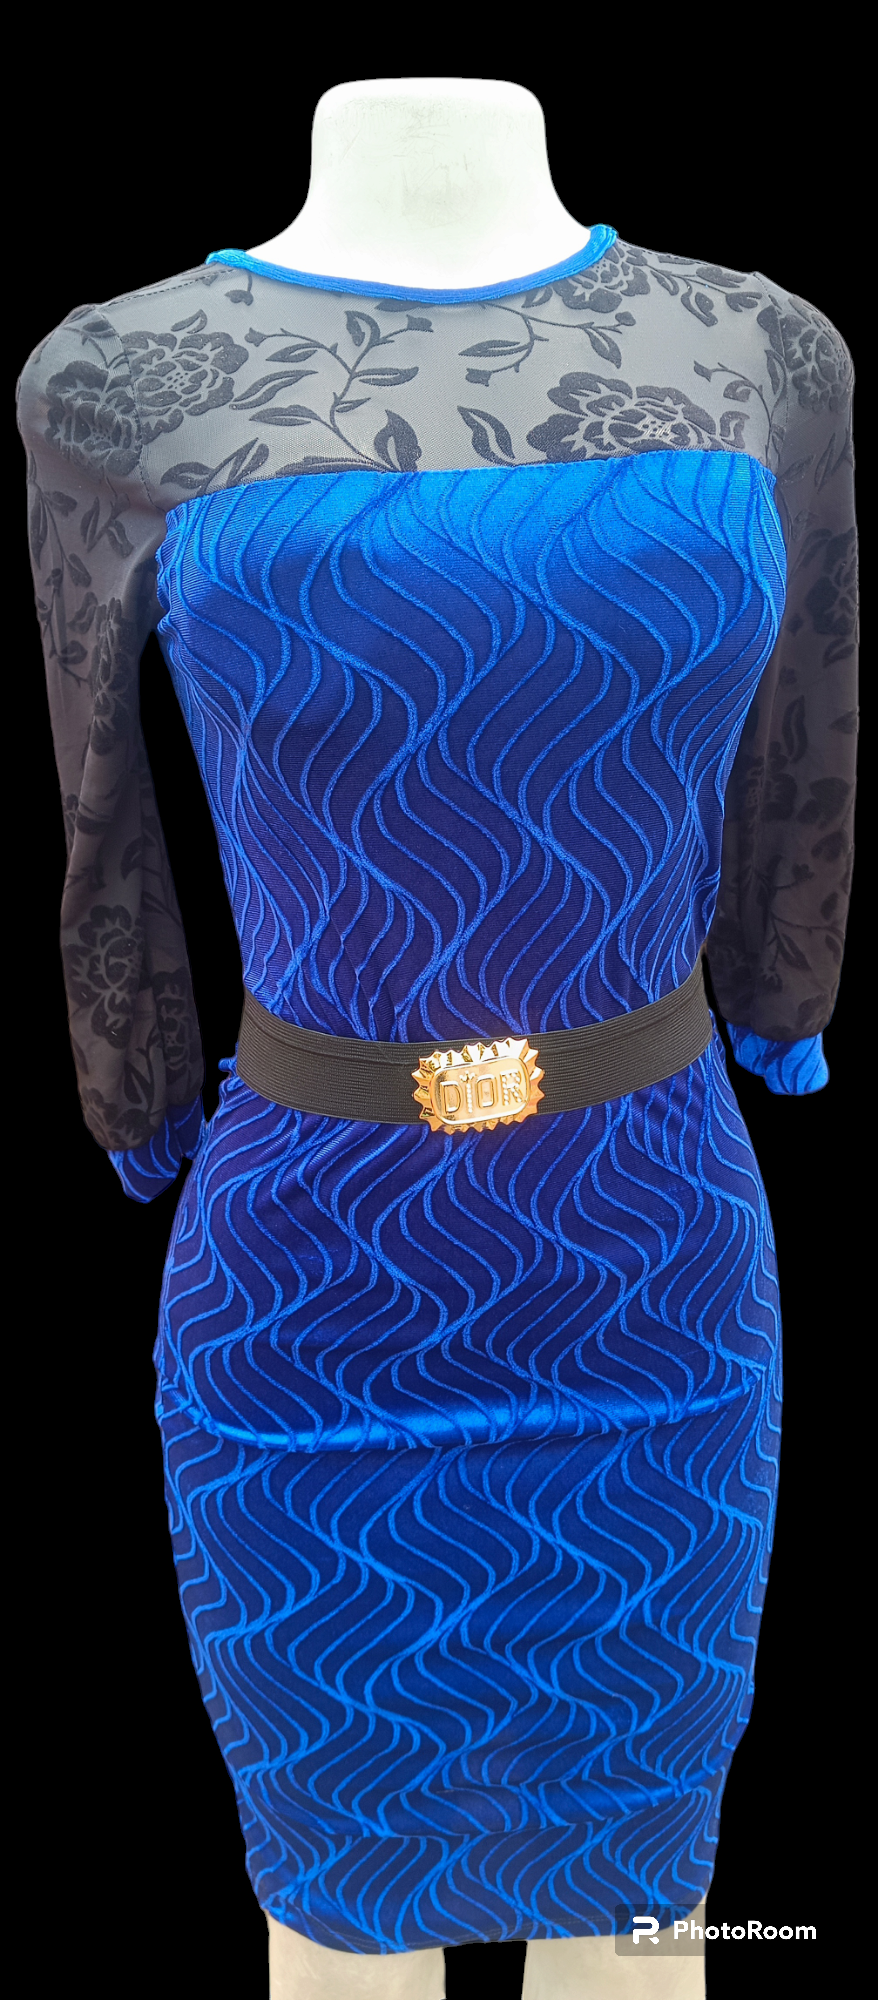 Bonanza women top fashion clothing blue